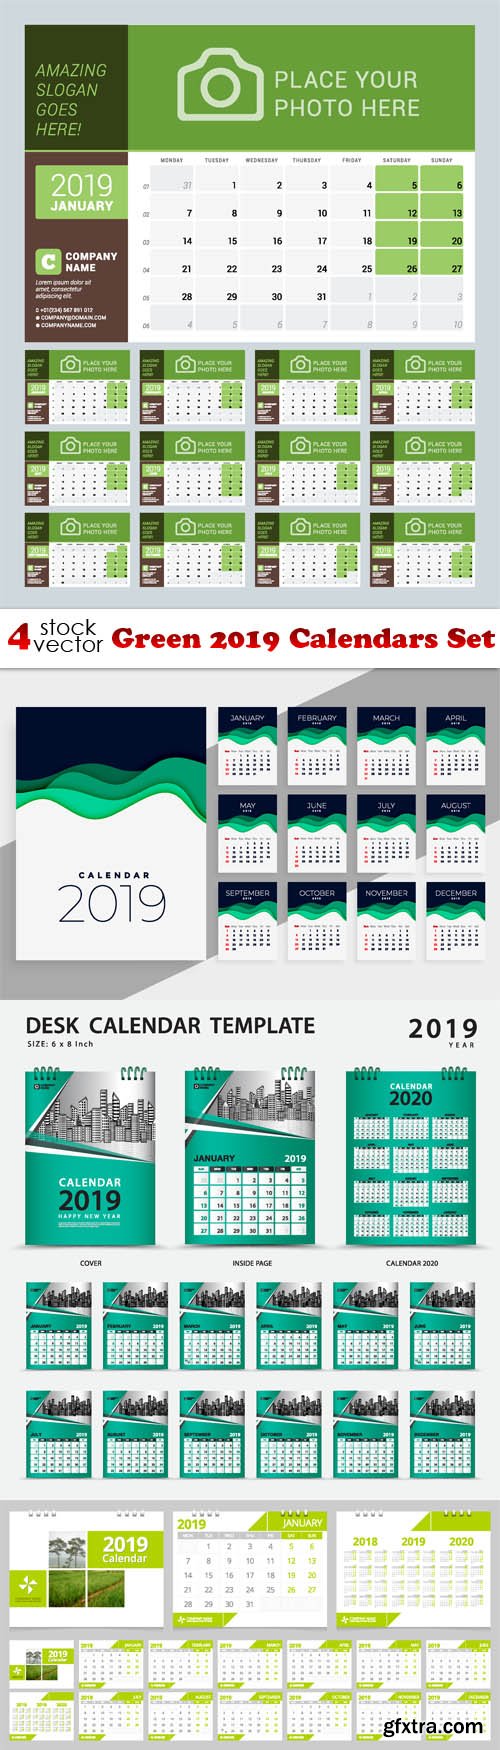 Vectors - Green 2019 Calendars Set